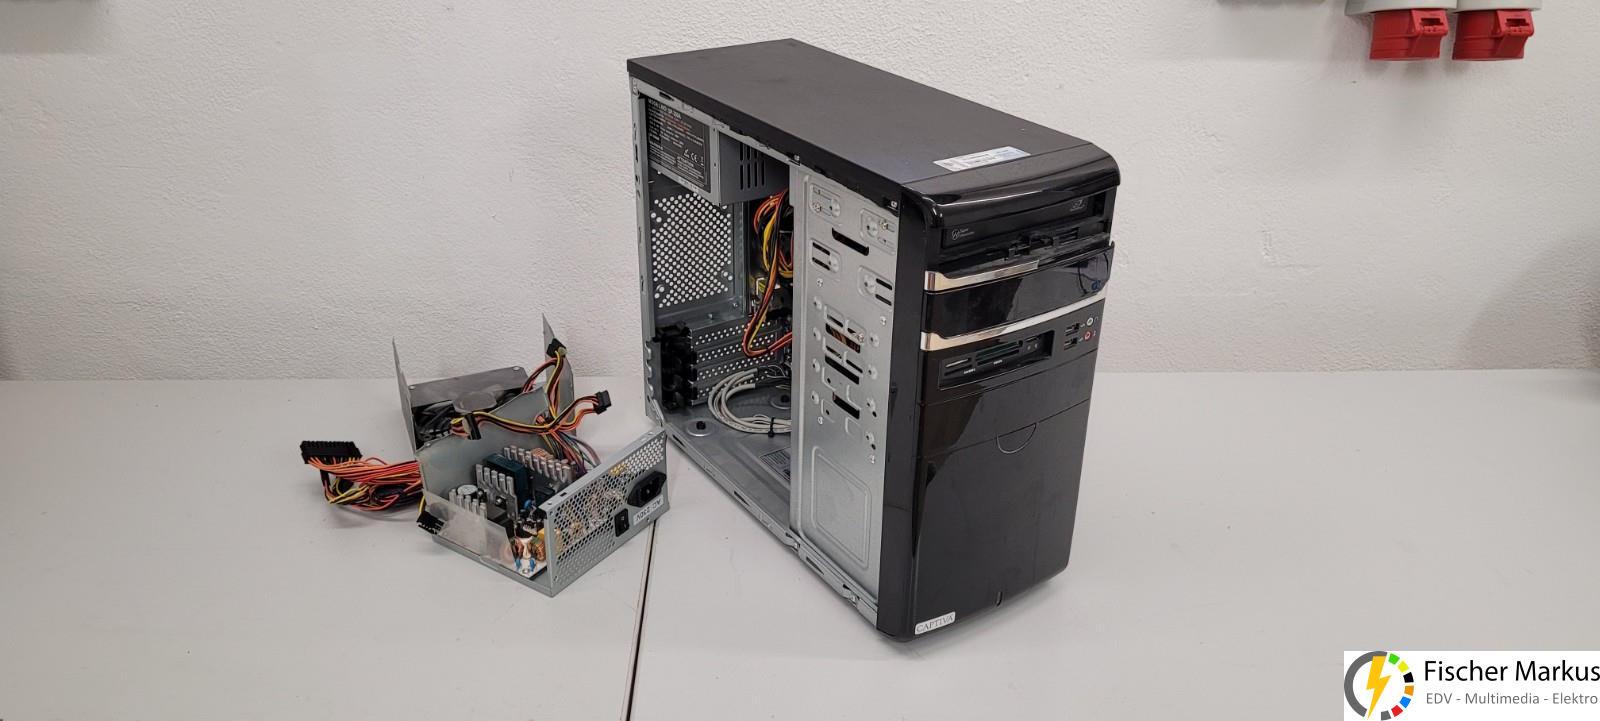 PC mit defektem und abgebranntem ATX Netzteil